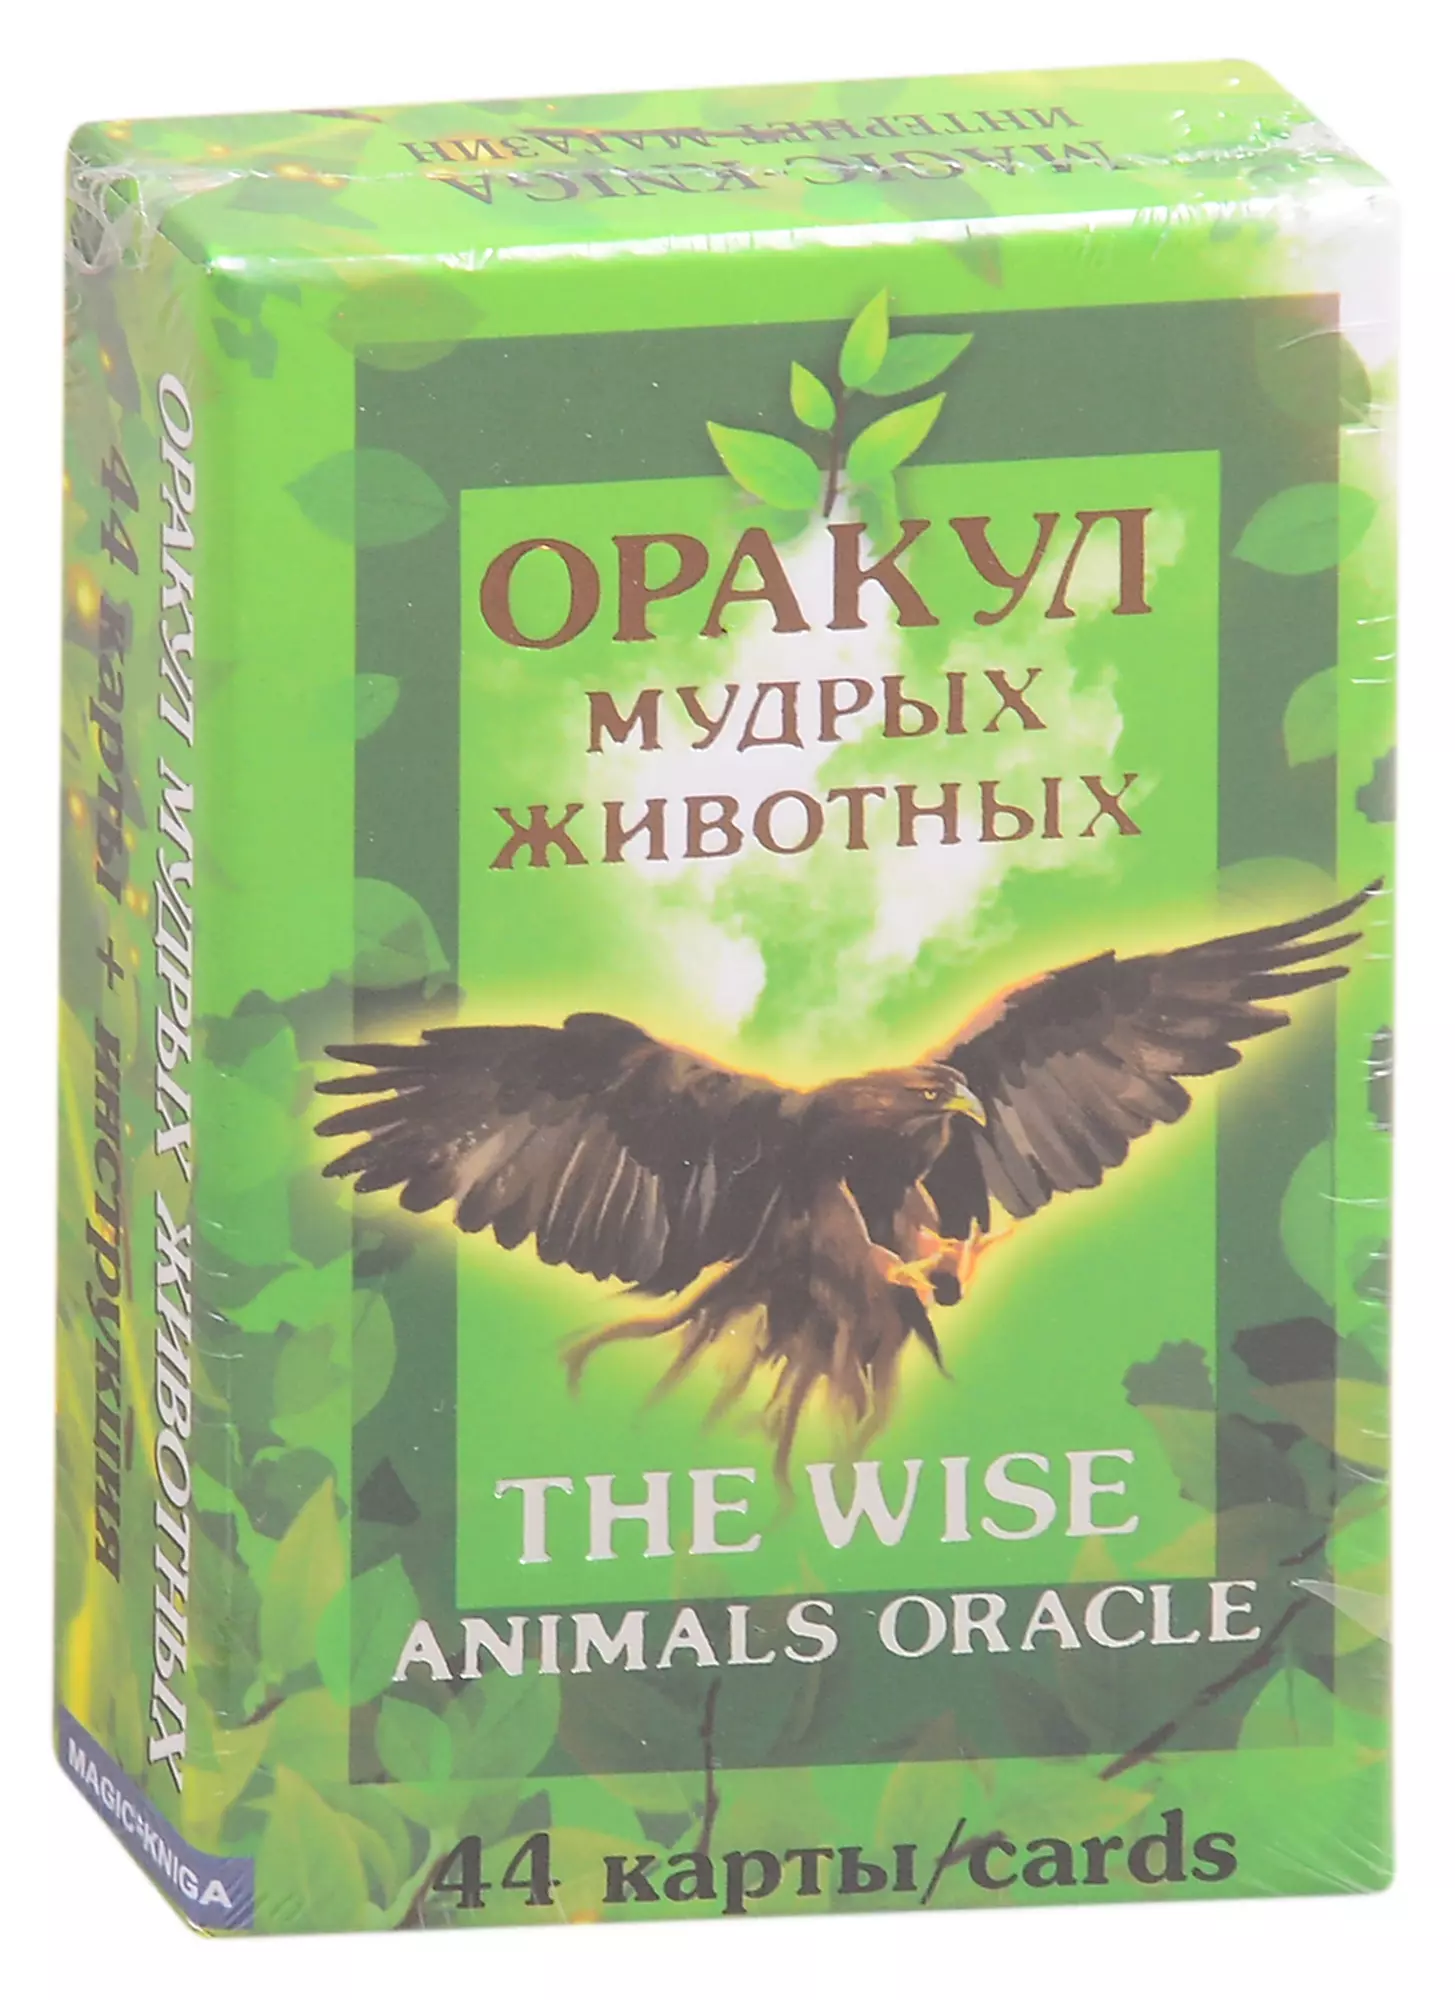 Оракул мудрых животных. The wise animals oracle (44 карты)